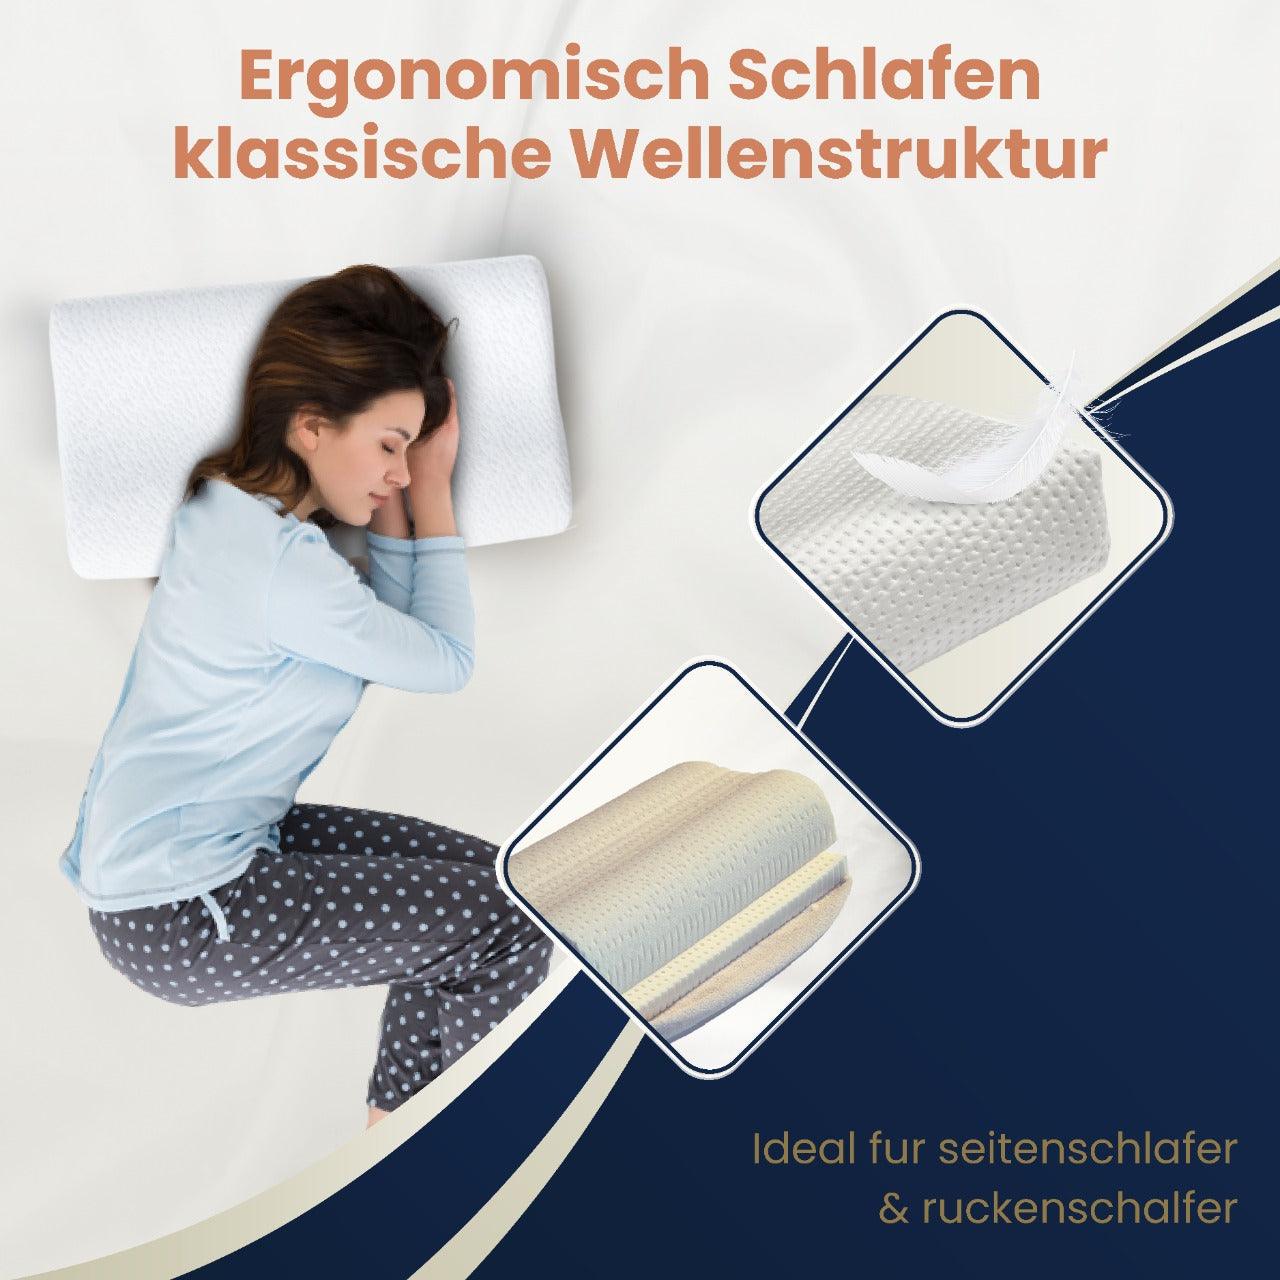 Thomsen Classic Pillow - Orthopädisches Schlafkissen aus Talalay Latex gegen Nackenschmerzen - Thomsen Shop